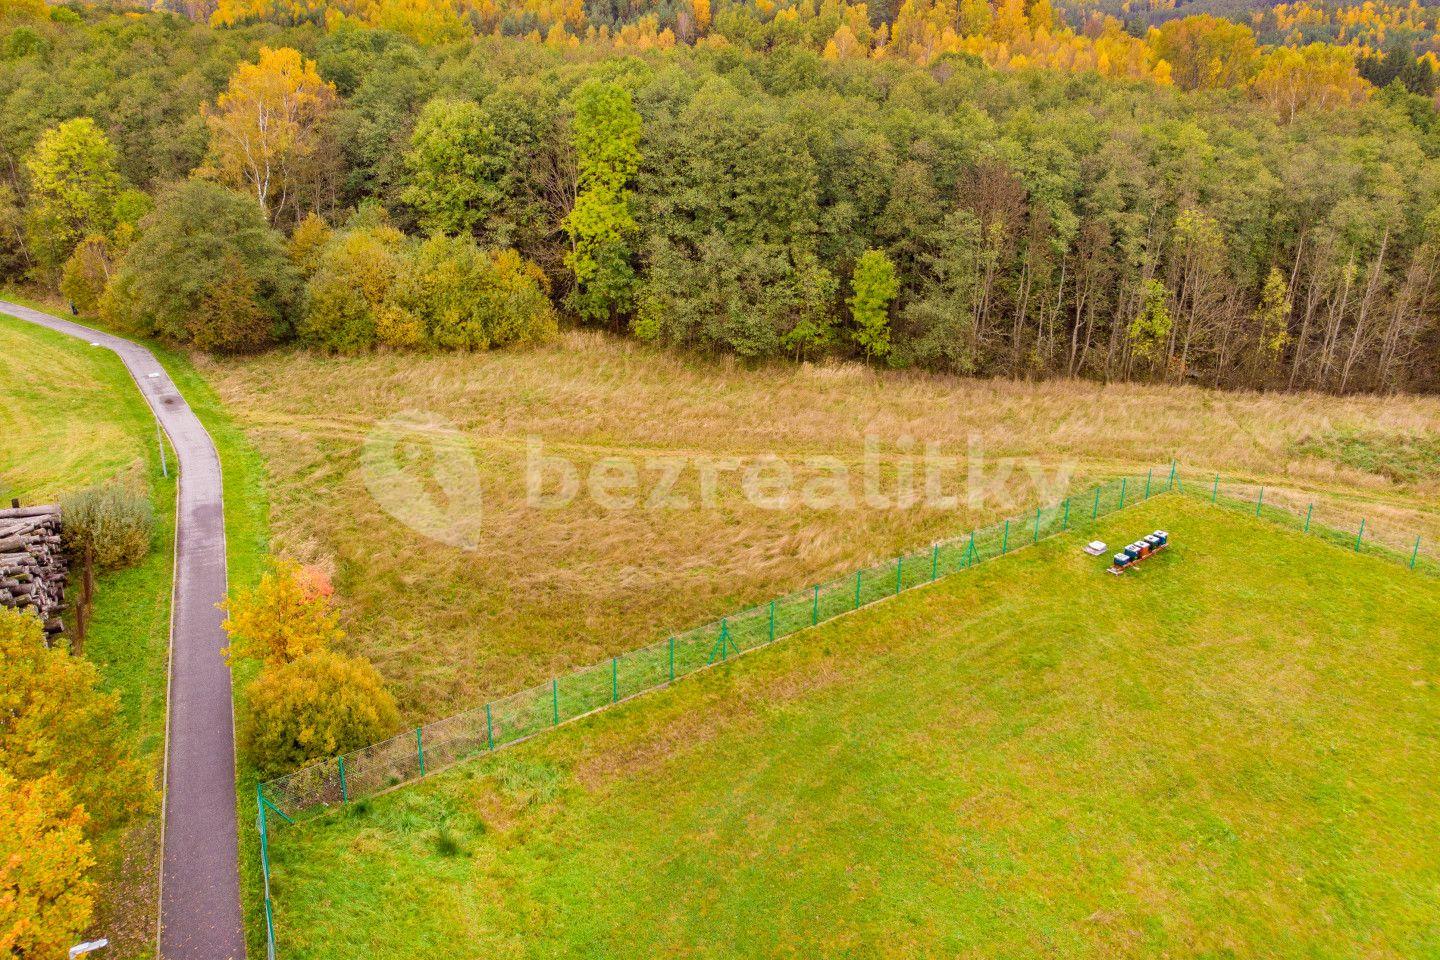 Prodej pozemku 3.023 m², Cvikov, Liberecký kraj